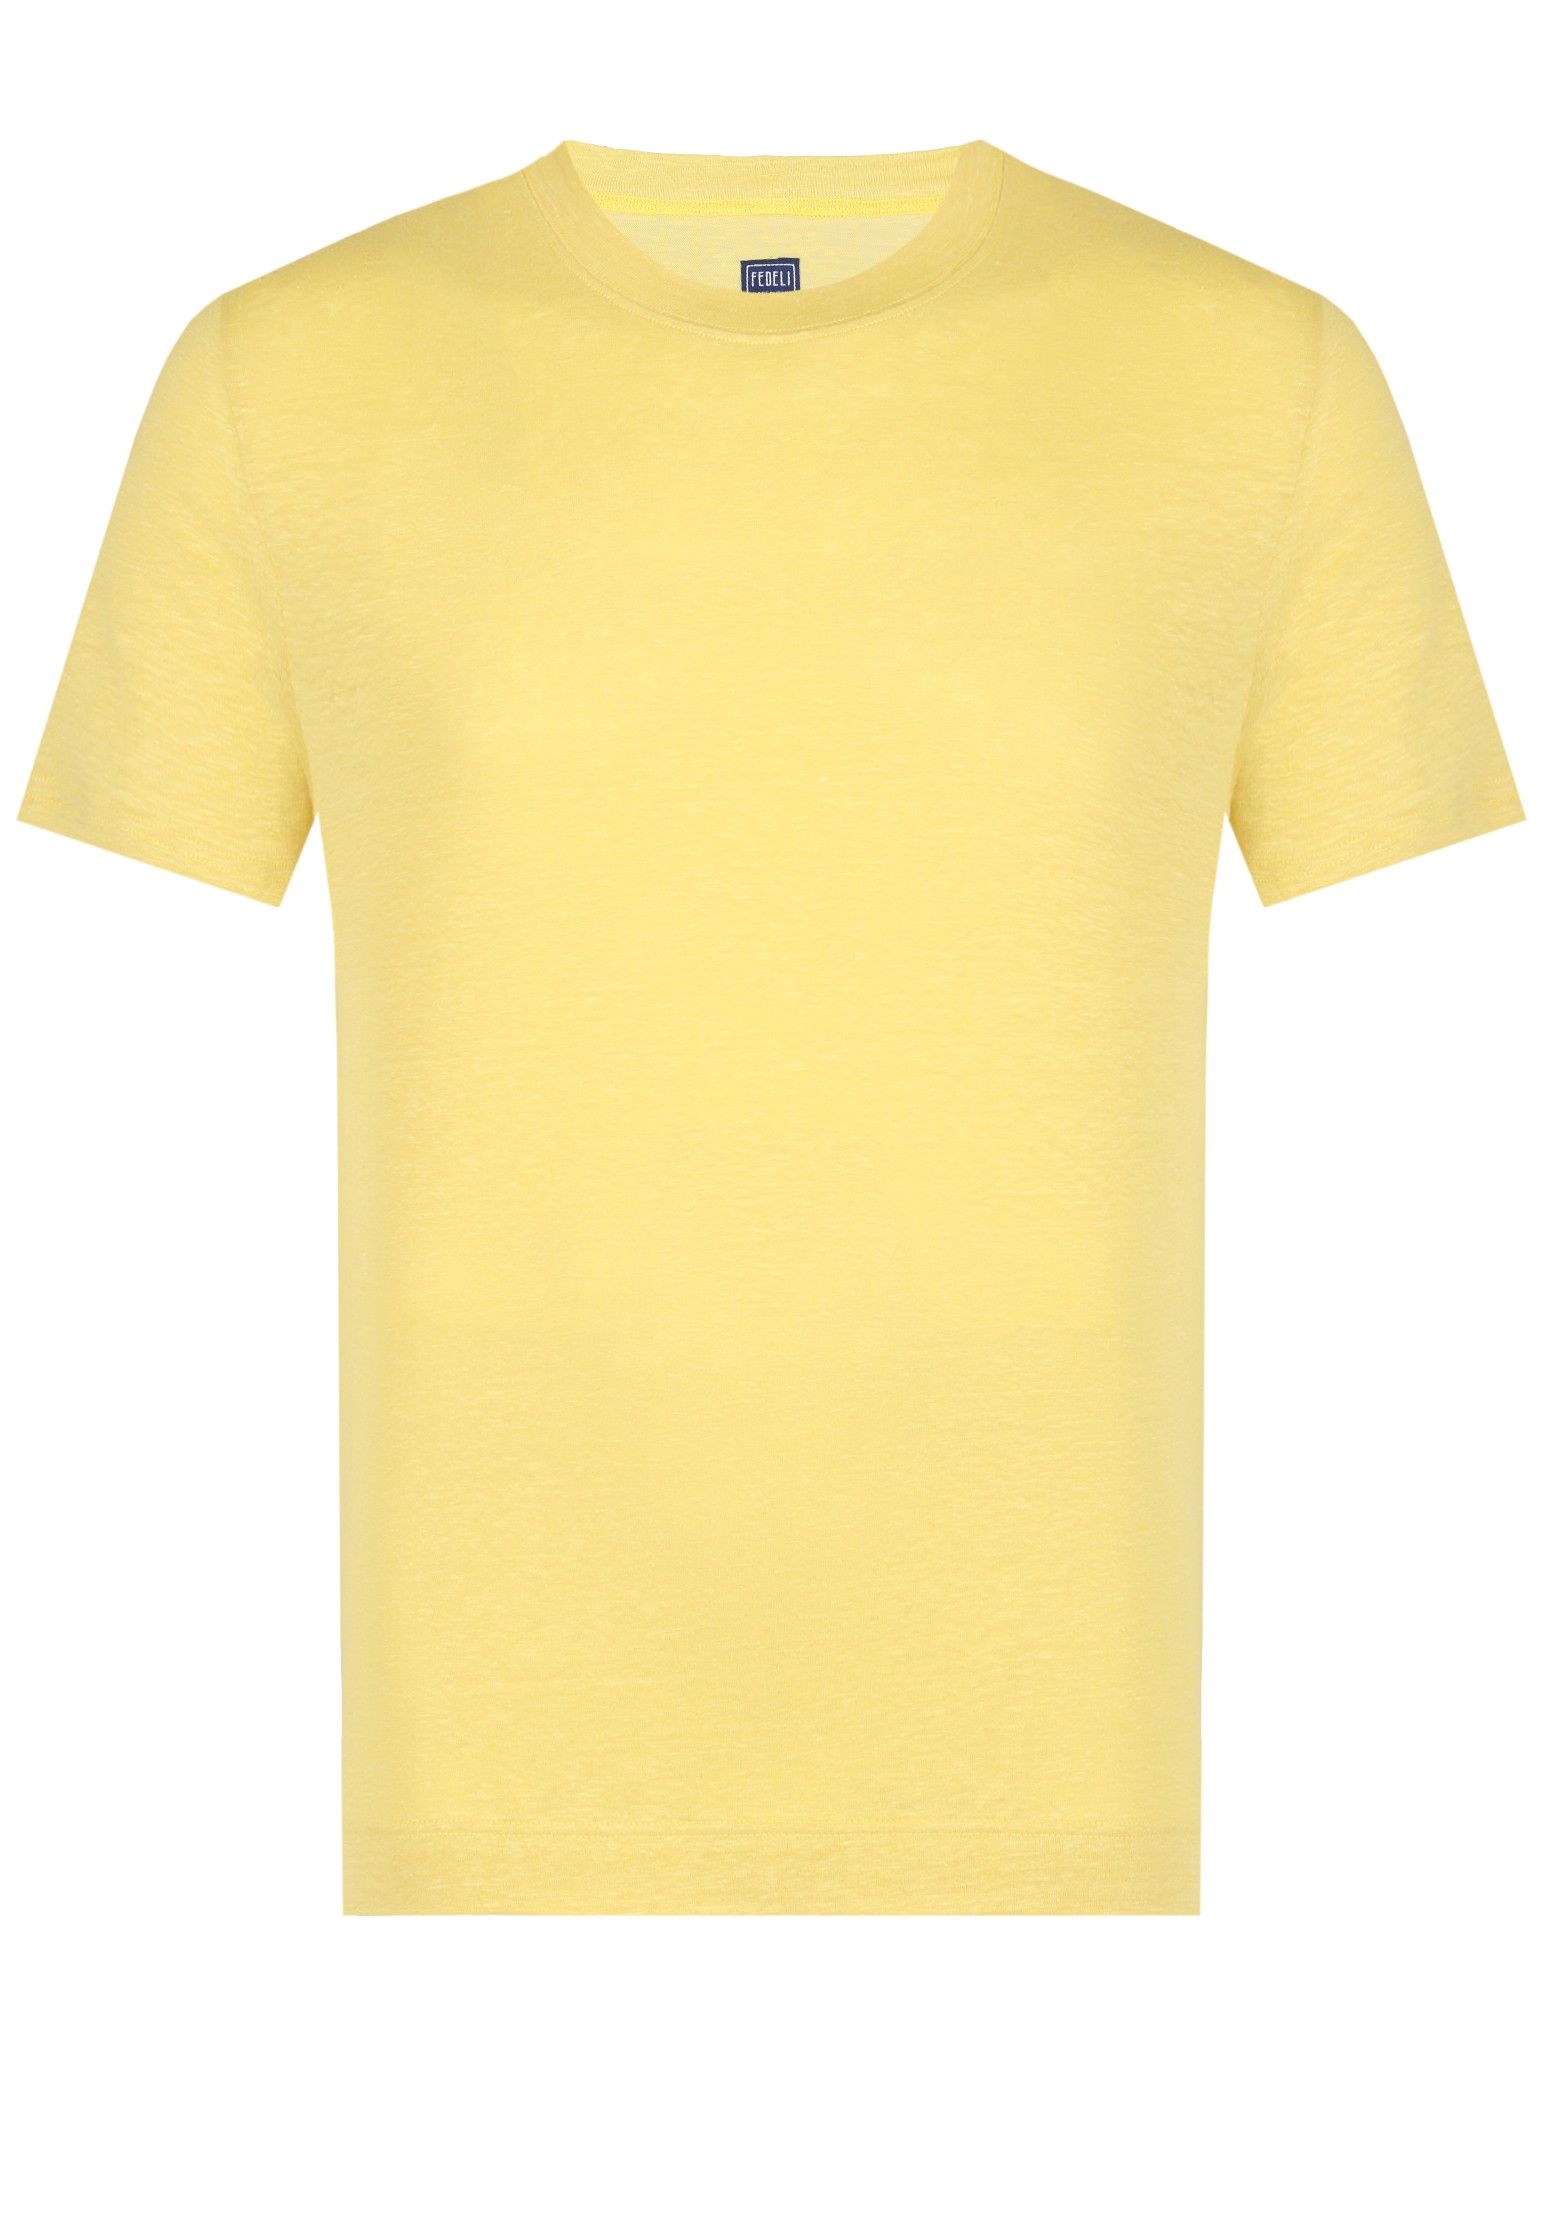 мужская футболка fedeli, желтая